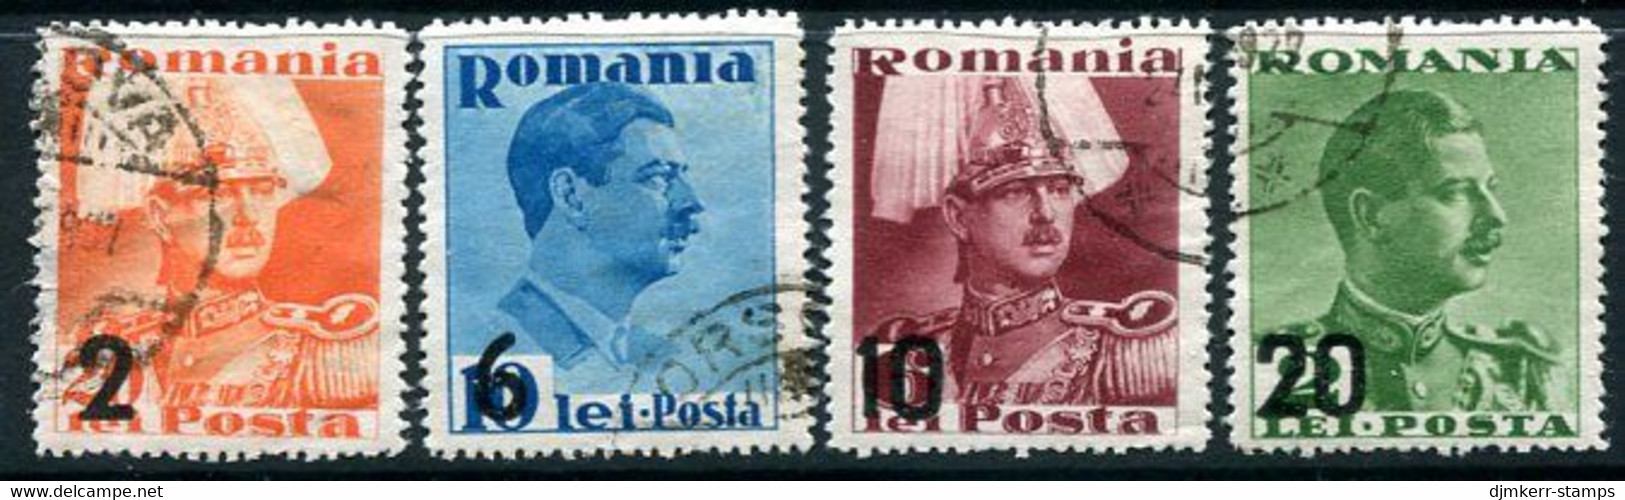 ROMANIA 1938 Surcharges Ex Block Used  Michel 543-46 - Usati